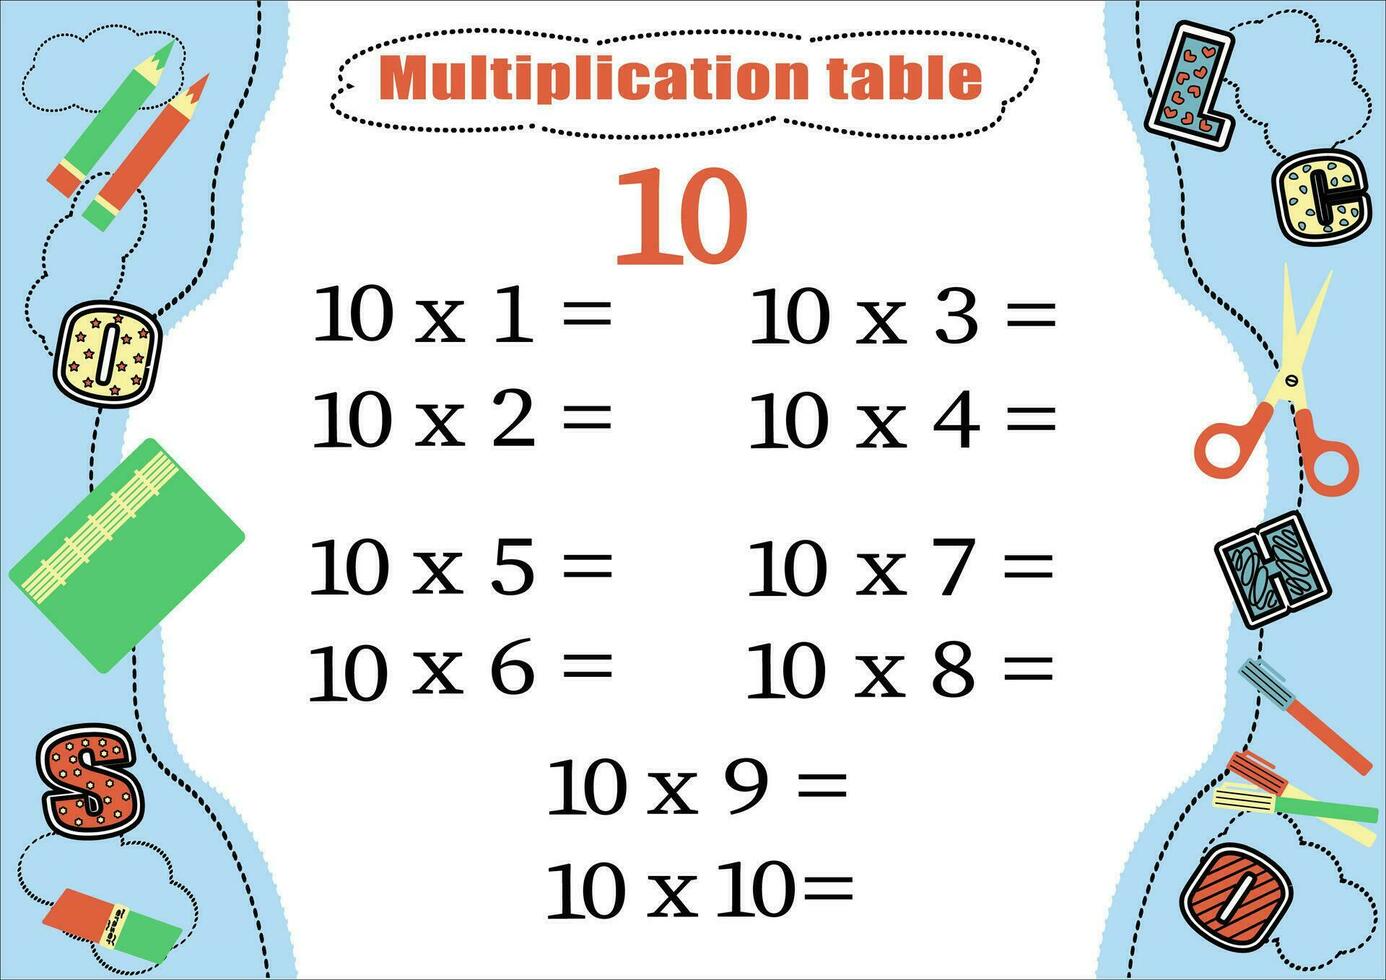 multiplication table par dix avec une tâche à consolider connaissance de multiplication. coloré dessin animé multiplication table vecteur pour enseignement mathématiques. école papeterie. eps10